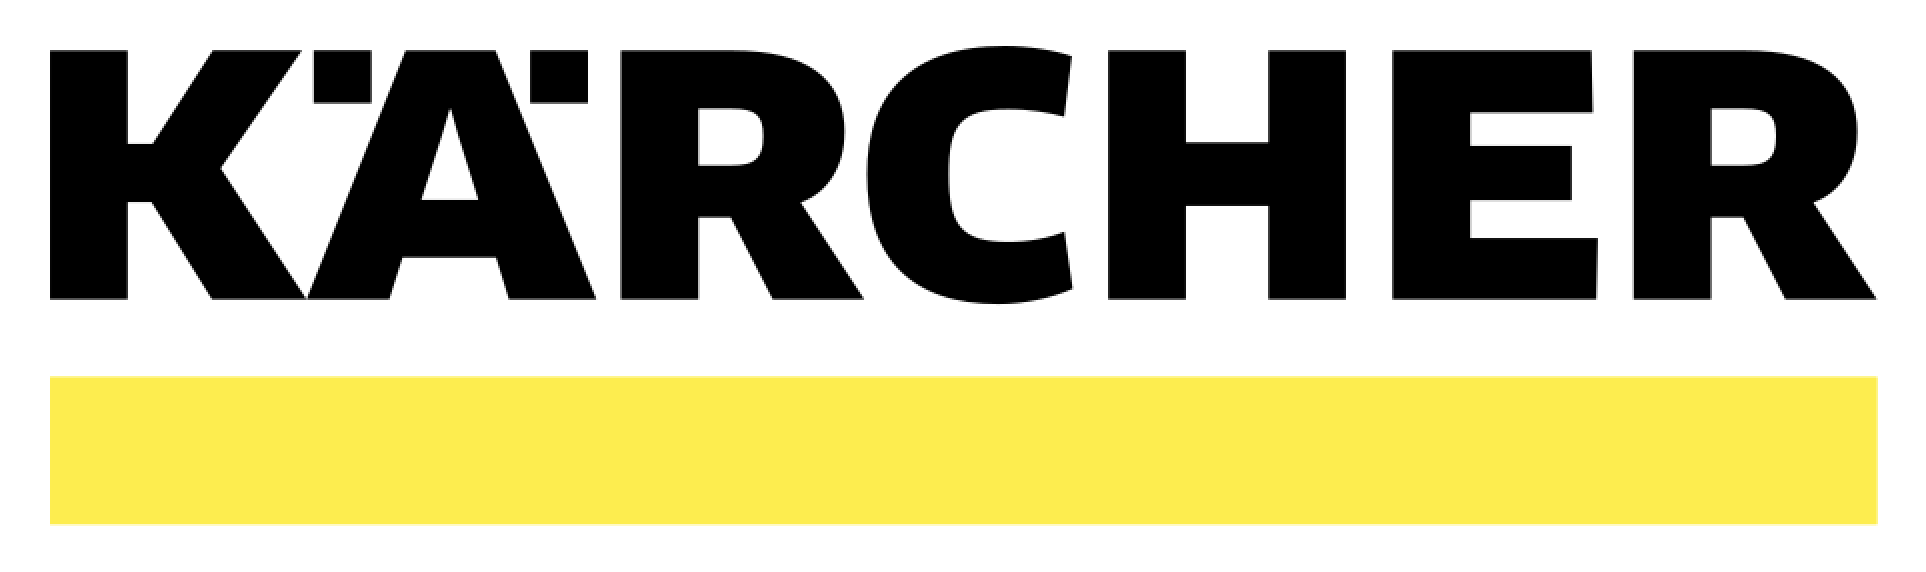 Karcher Logo.png